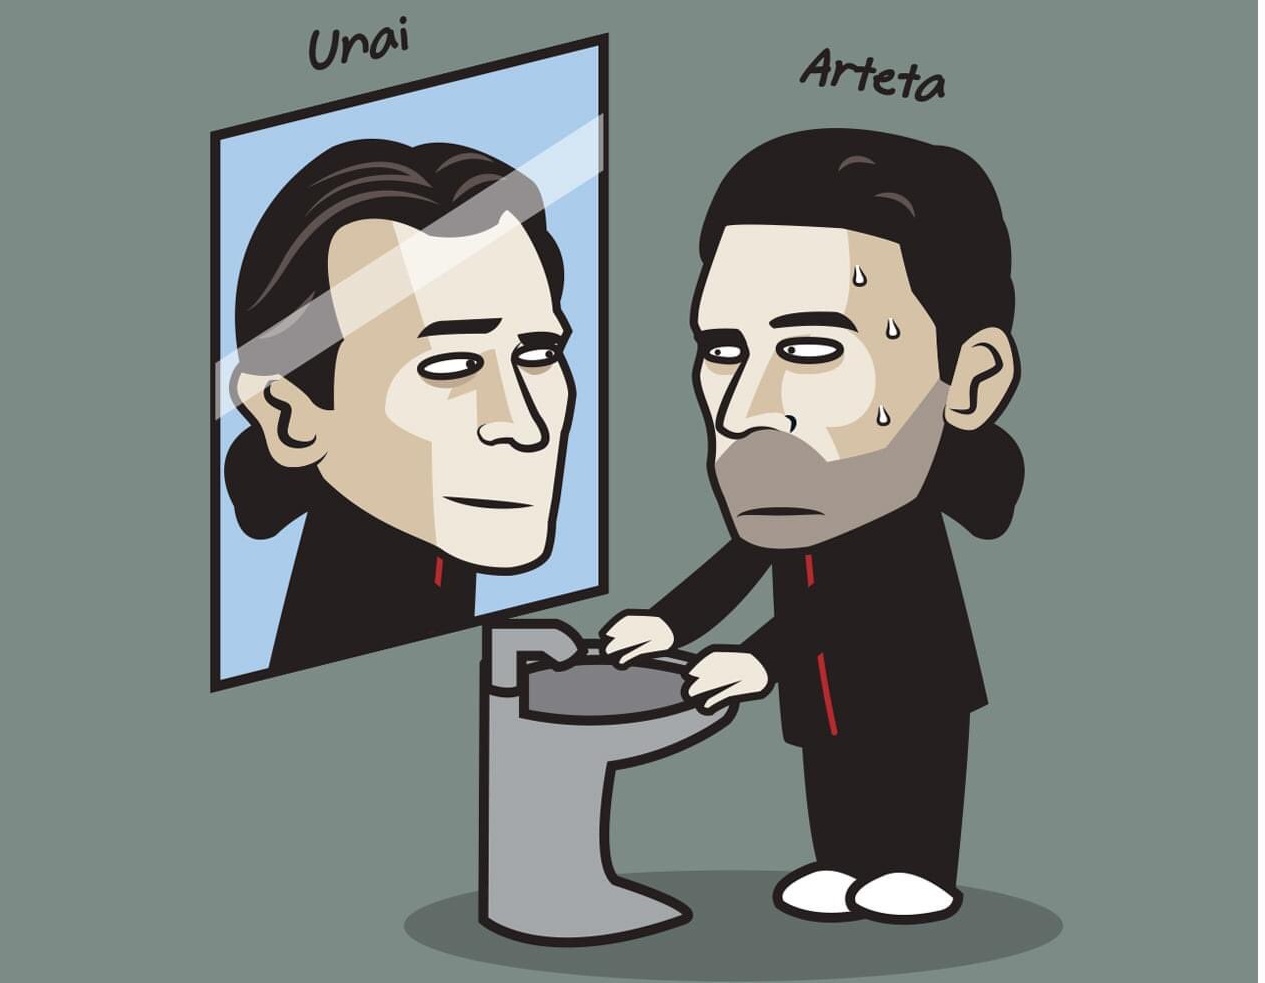 Arteta càng lúc càng hiện hình giống như Unai Emery. Ảnh: Just Toon It.